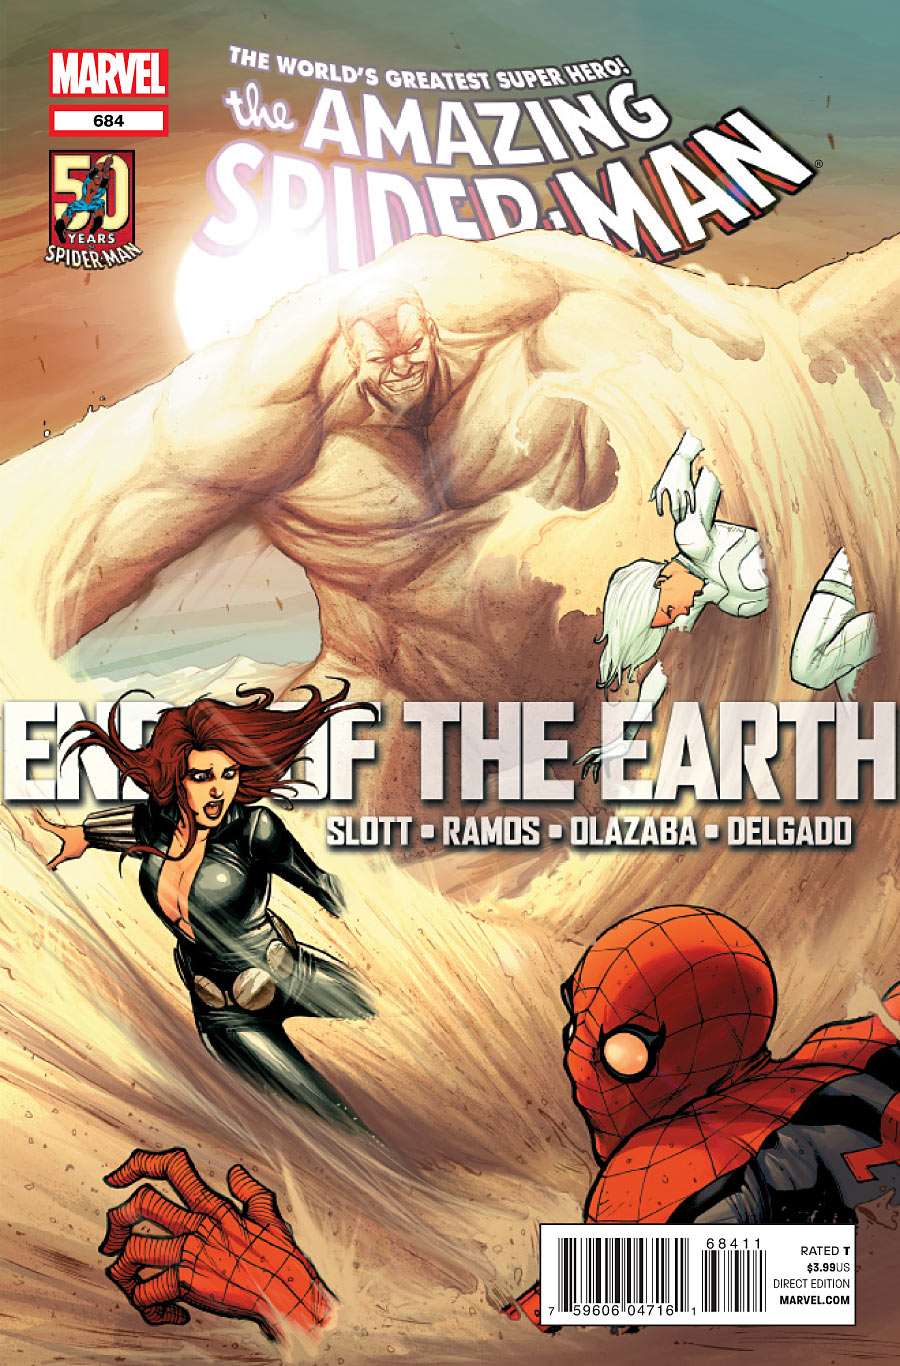 Amazing Spider-Man Vol. 1 #684